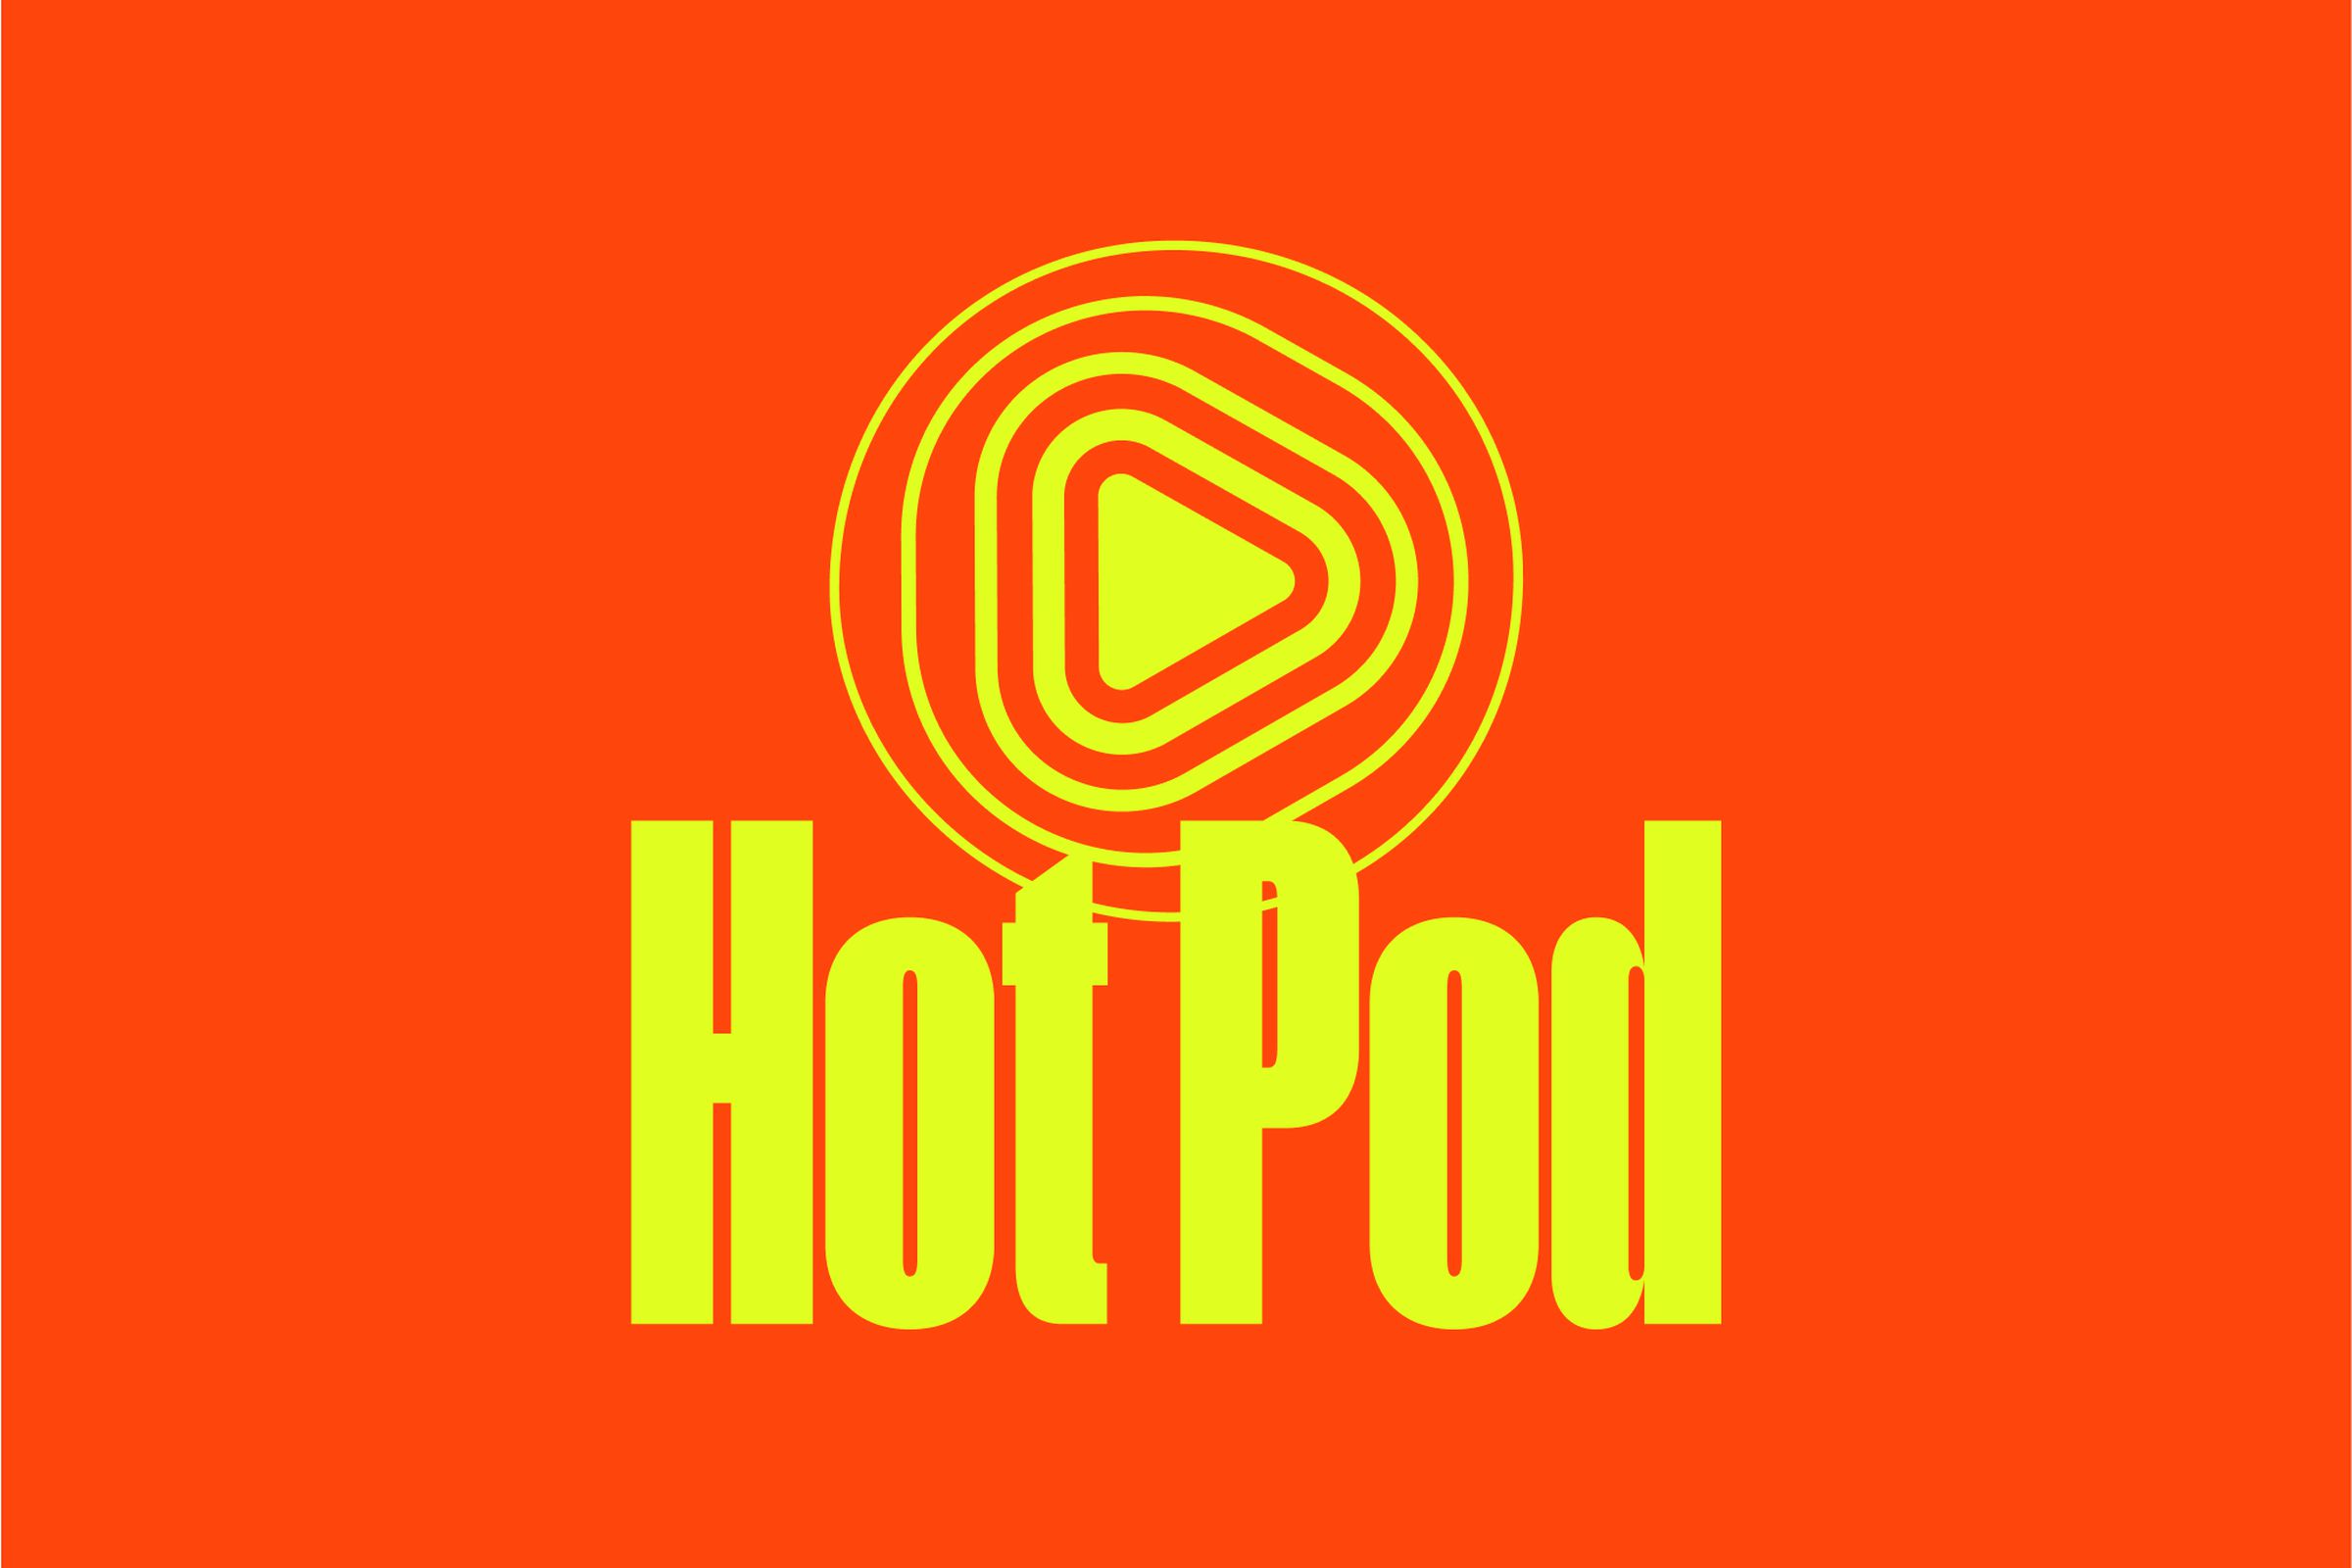 The logo for Hot Pod.